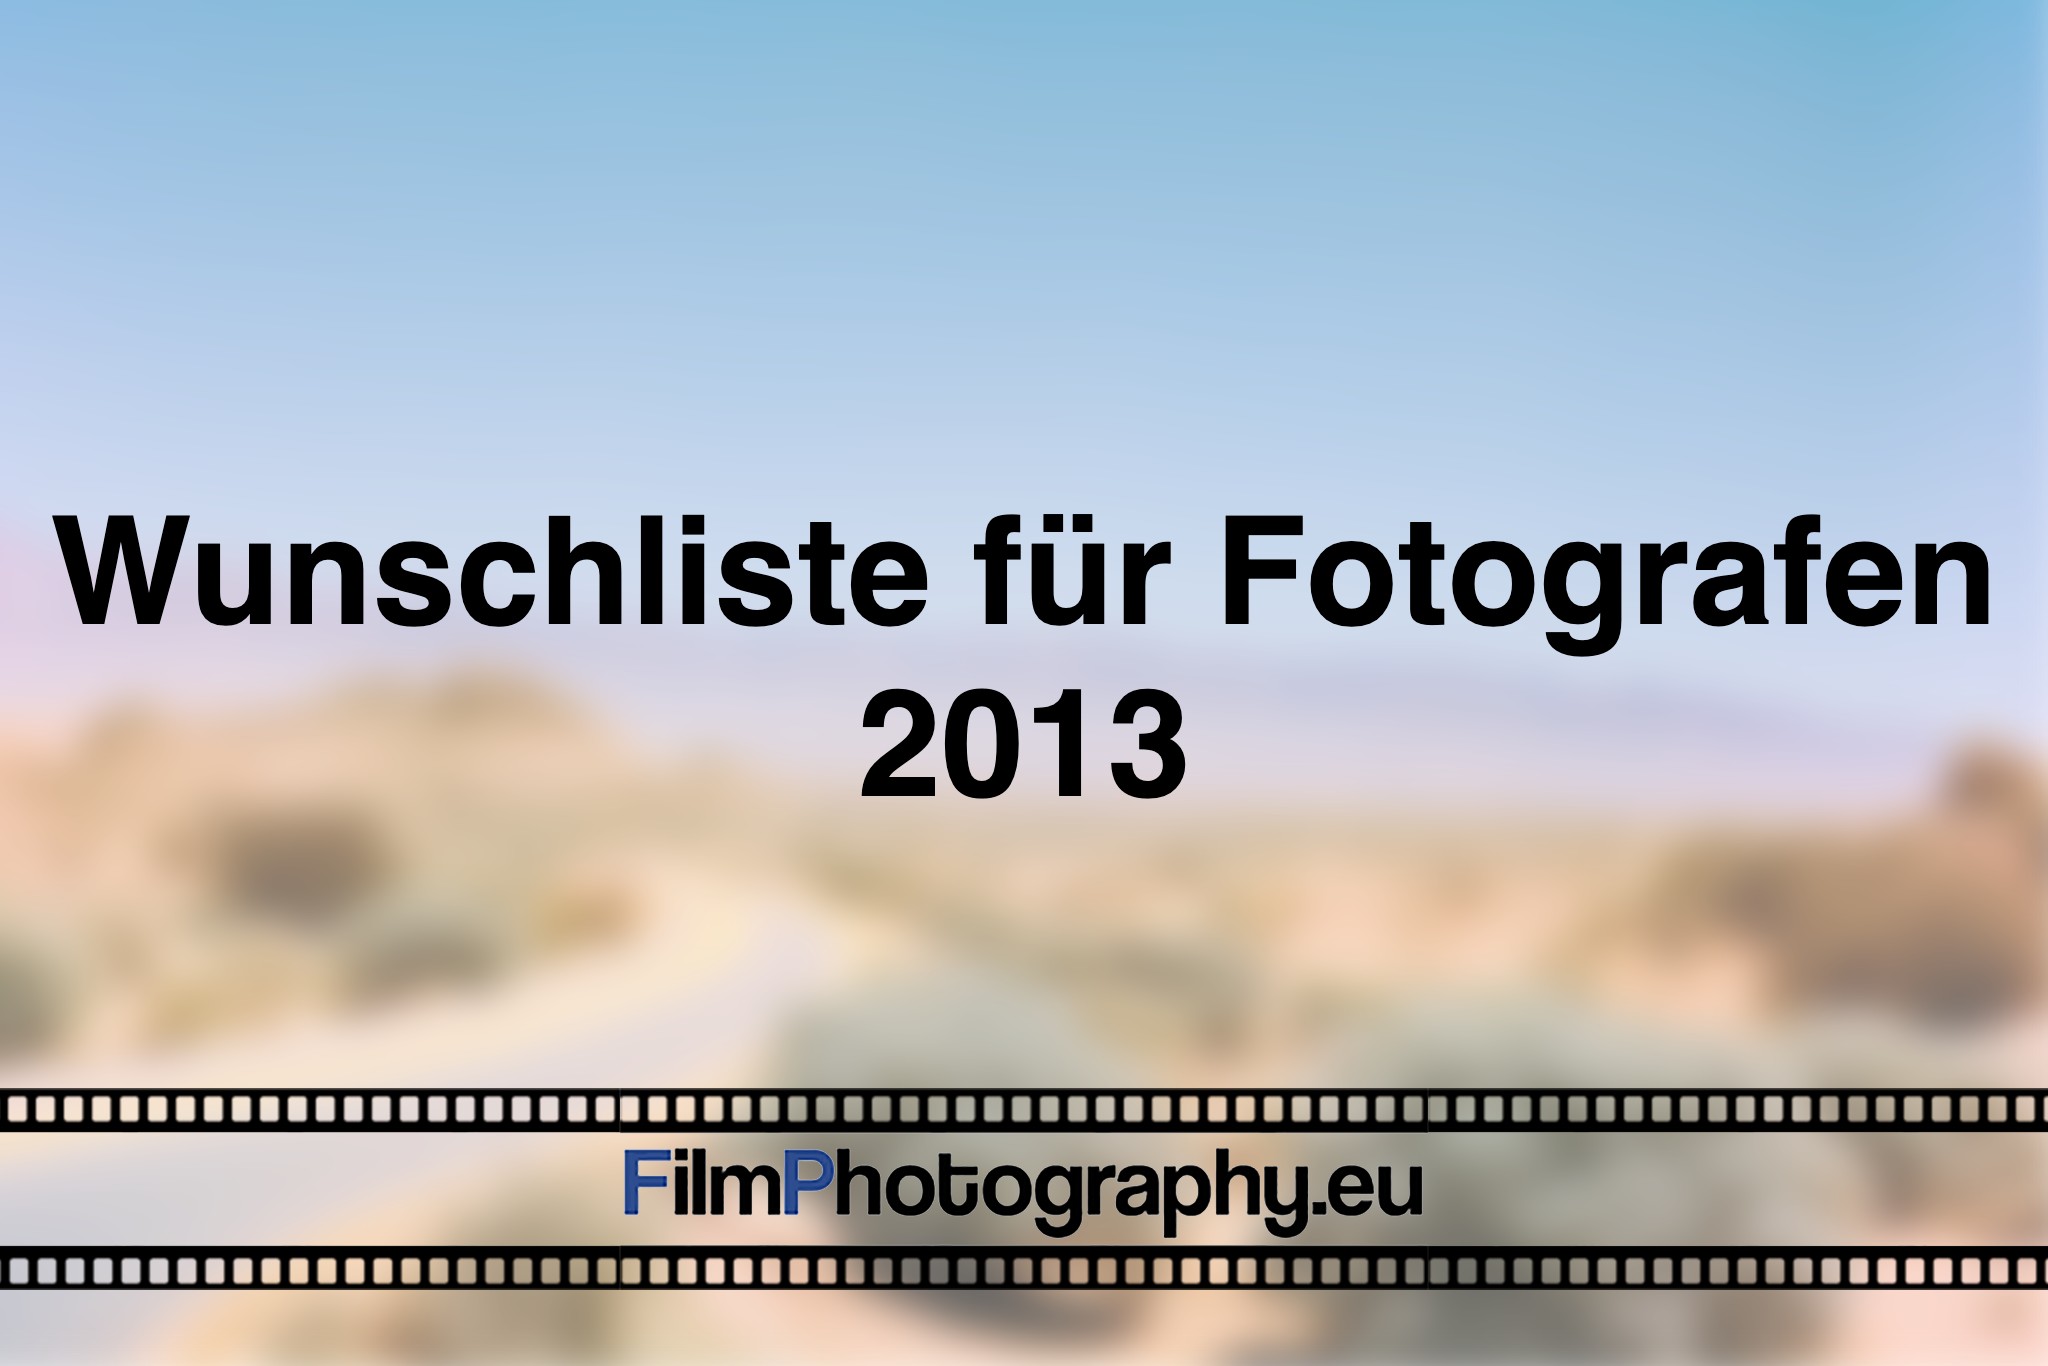 wunschliste-fuer-fotografen-2013-photo-bnv